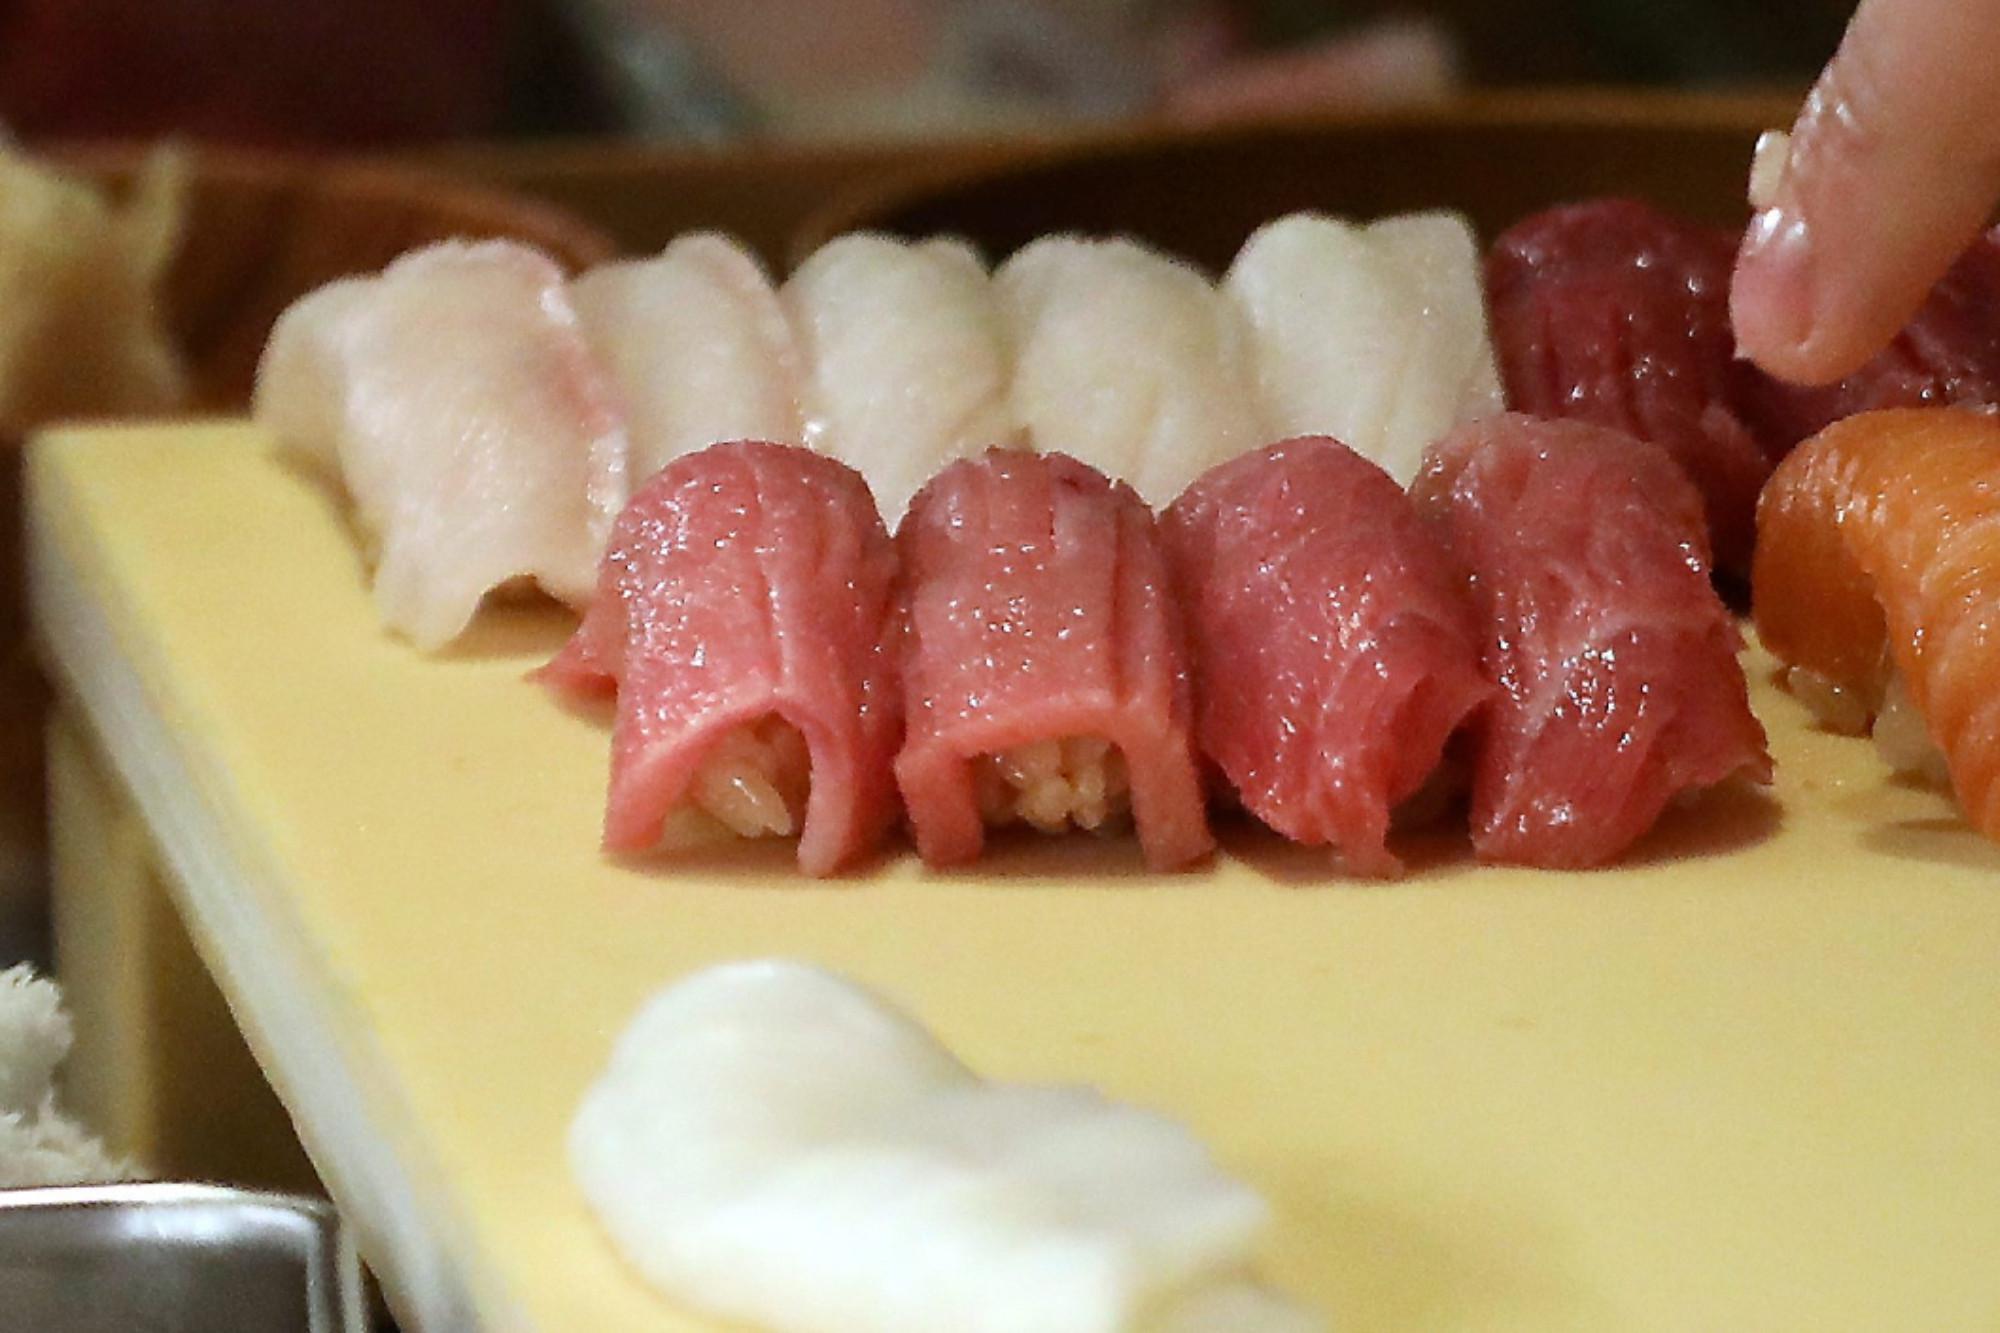 Mangia sushi - sta male e muore: mistero su morte 40enne nel messinese